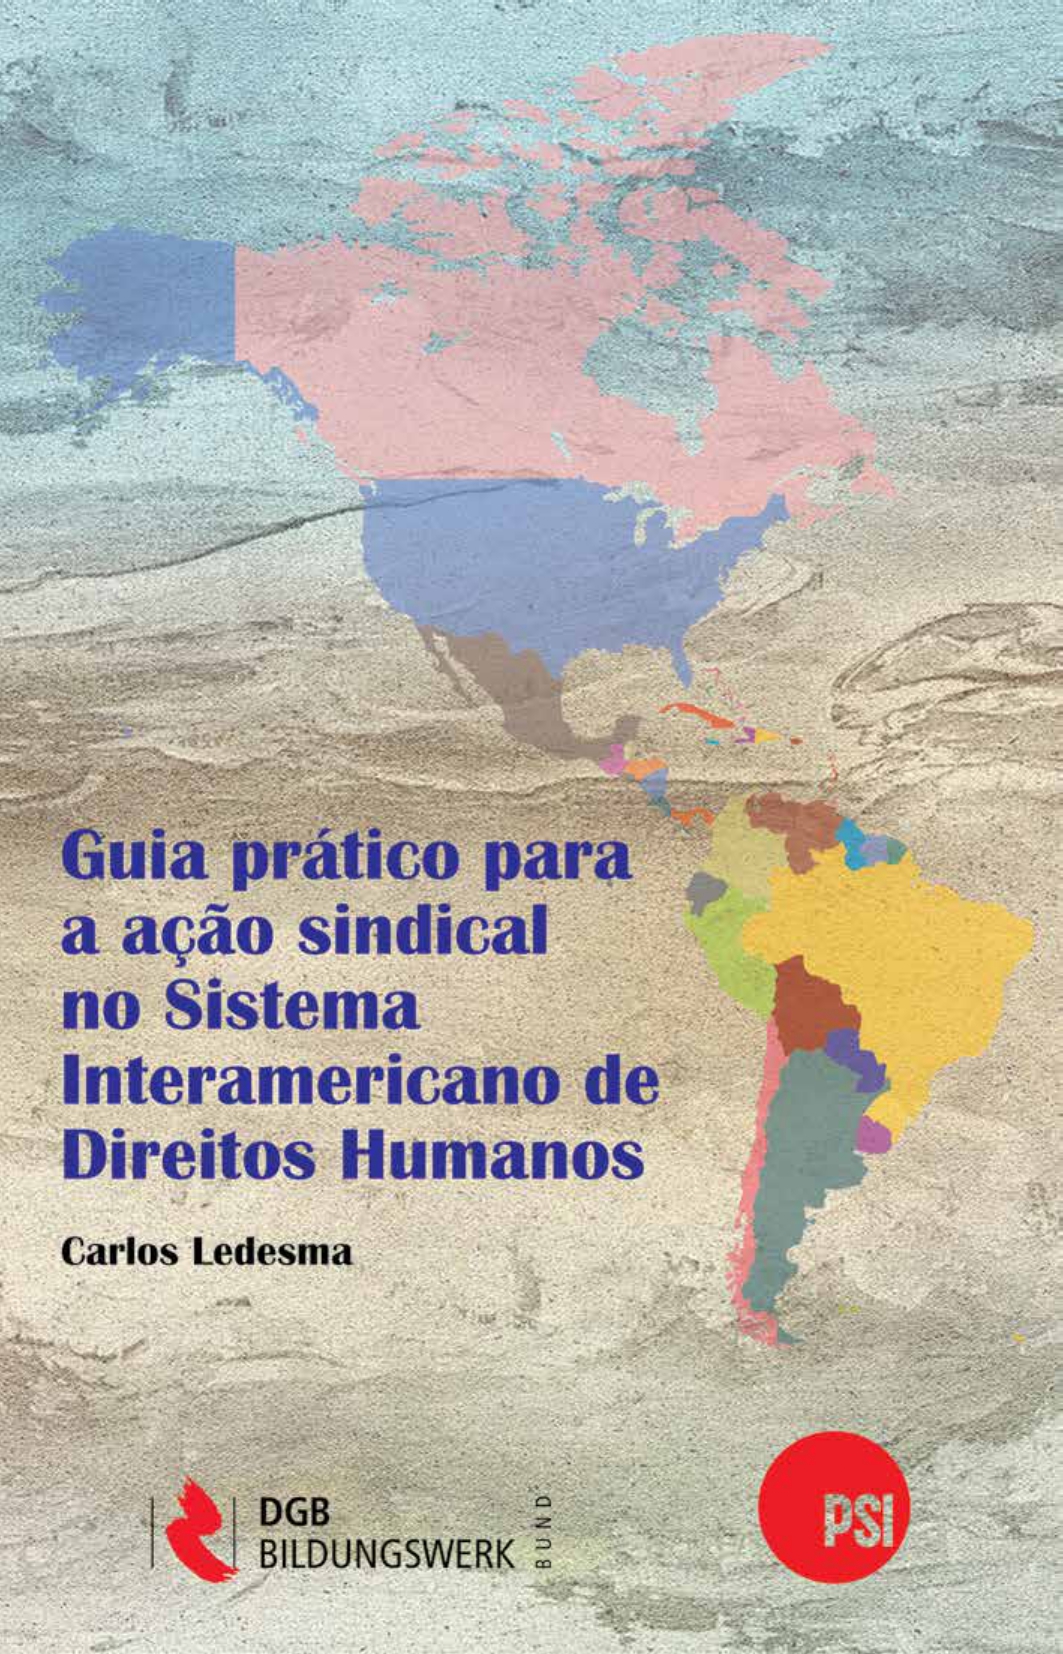 ISP-Guia-Prático-para-a-Ação-Sindical-no-Sistema-Interamericano-de-Direitos-Humanos_page-0001.jpg